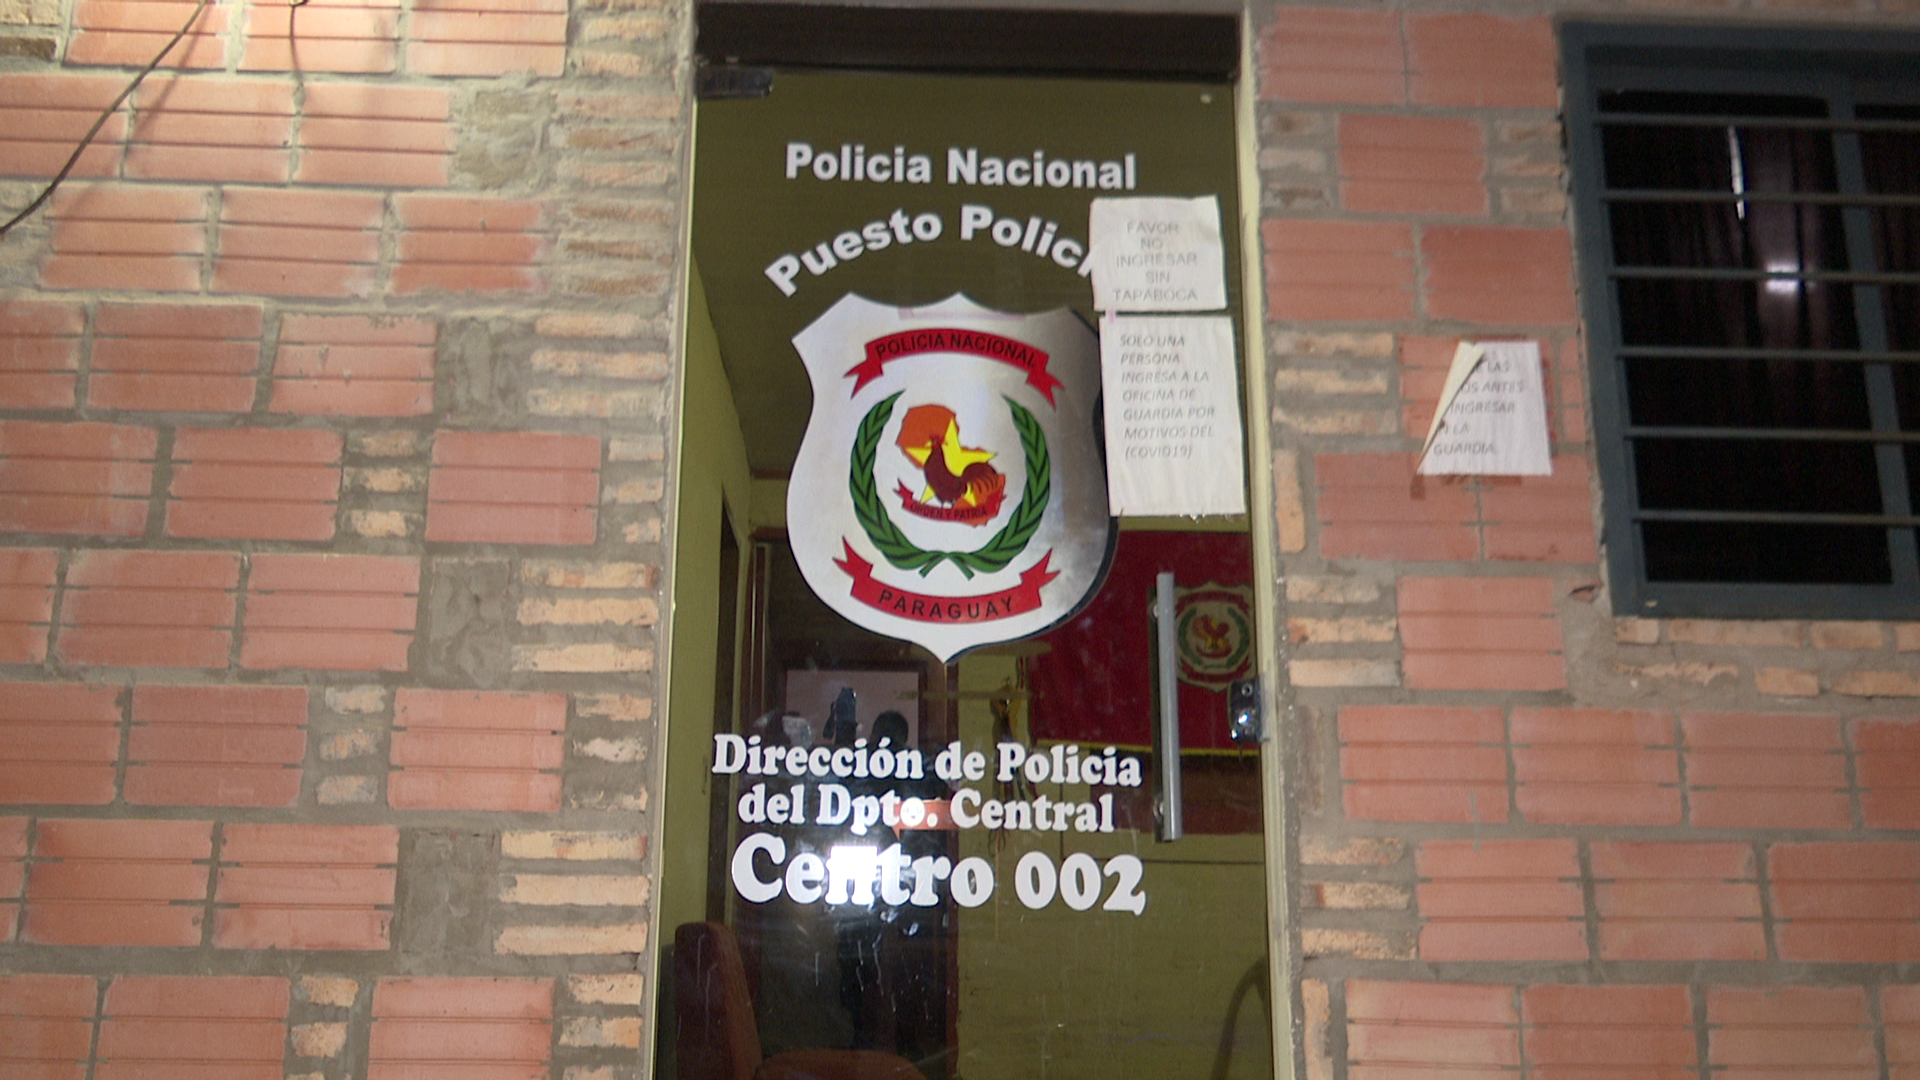 Puesto Policial de San Lorenzo - Centro 002.